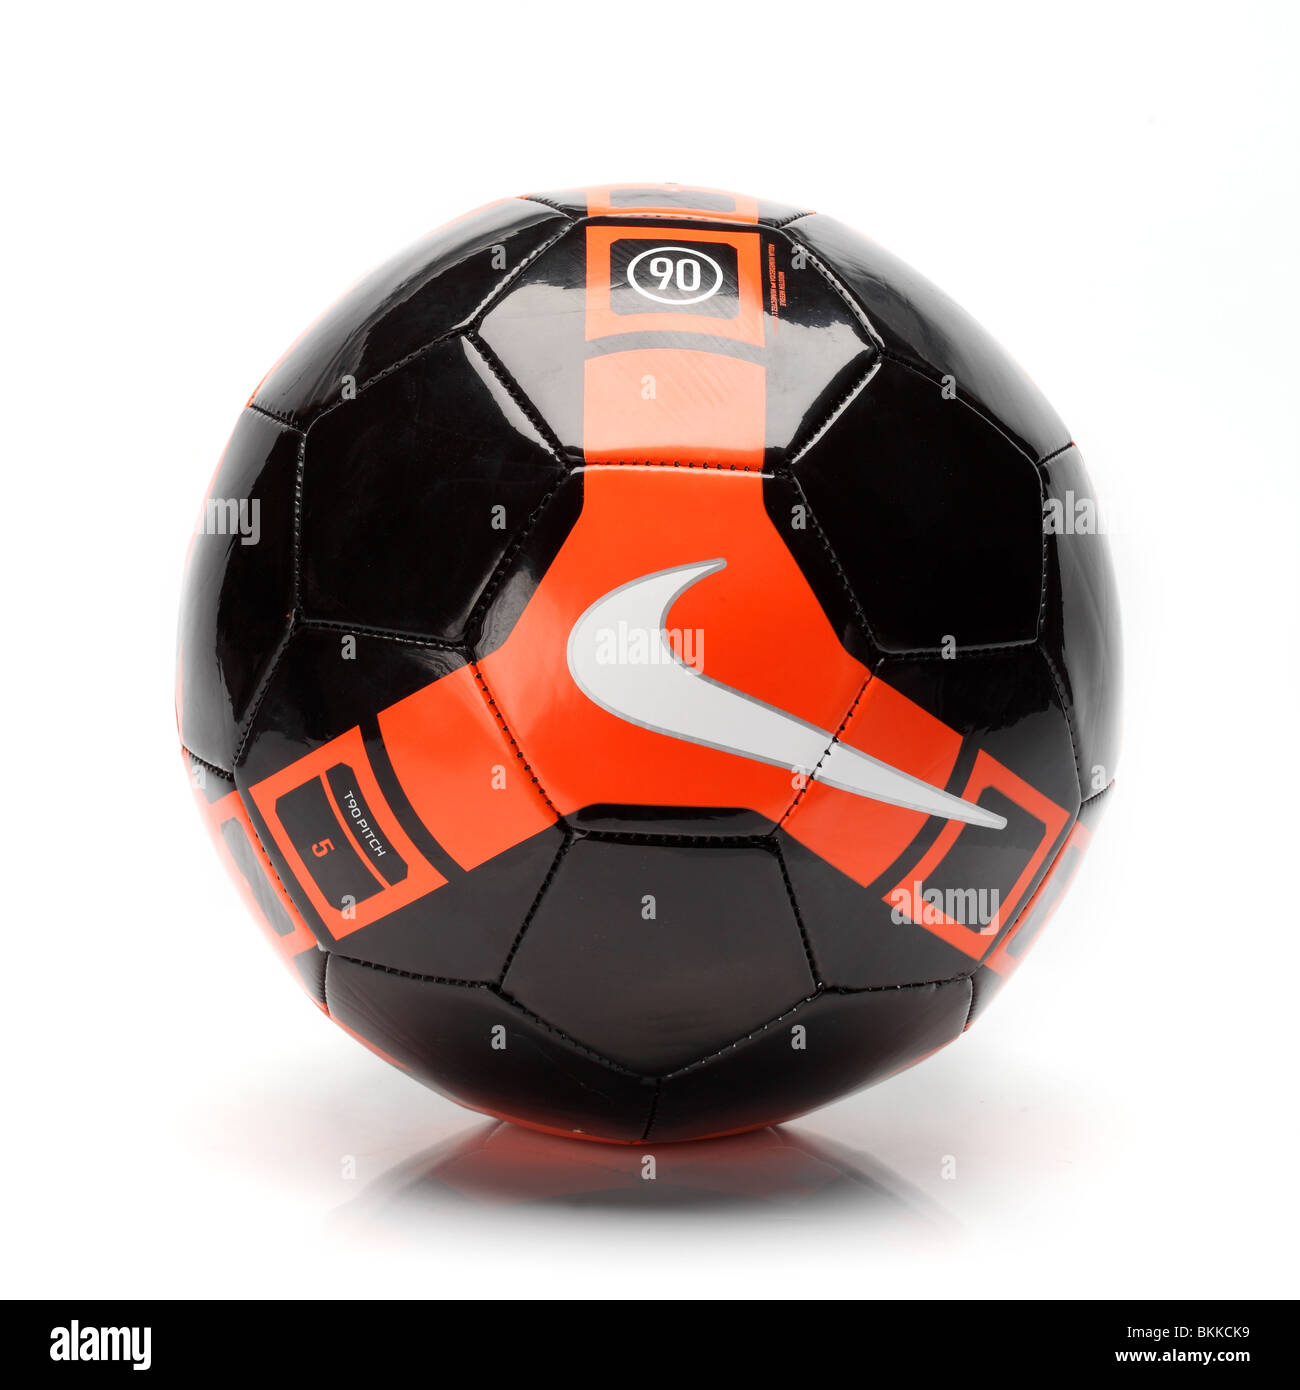 Team Nike piede palla calcio nero e arancio T 90 Foto Stock